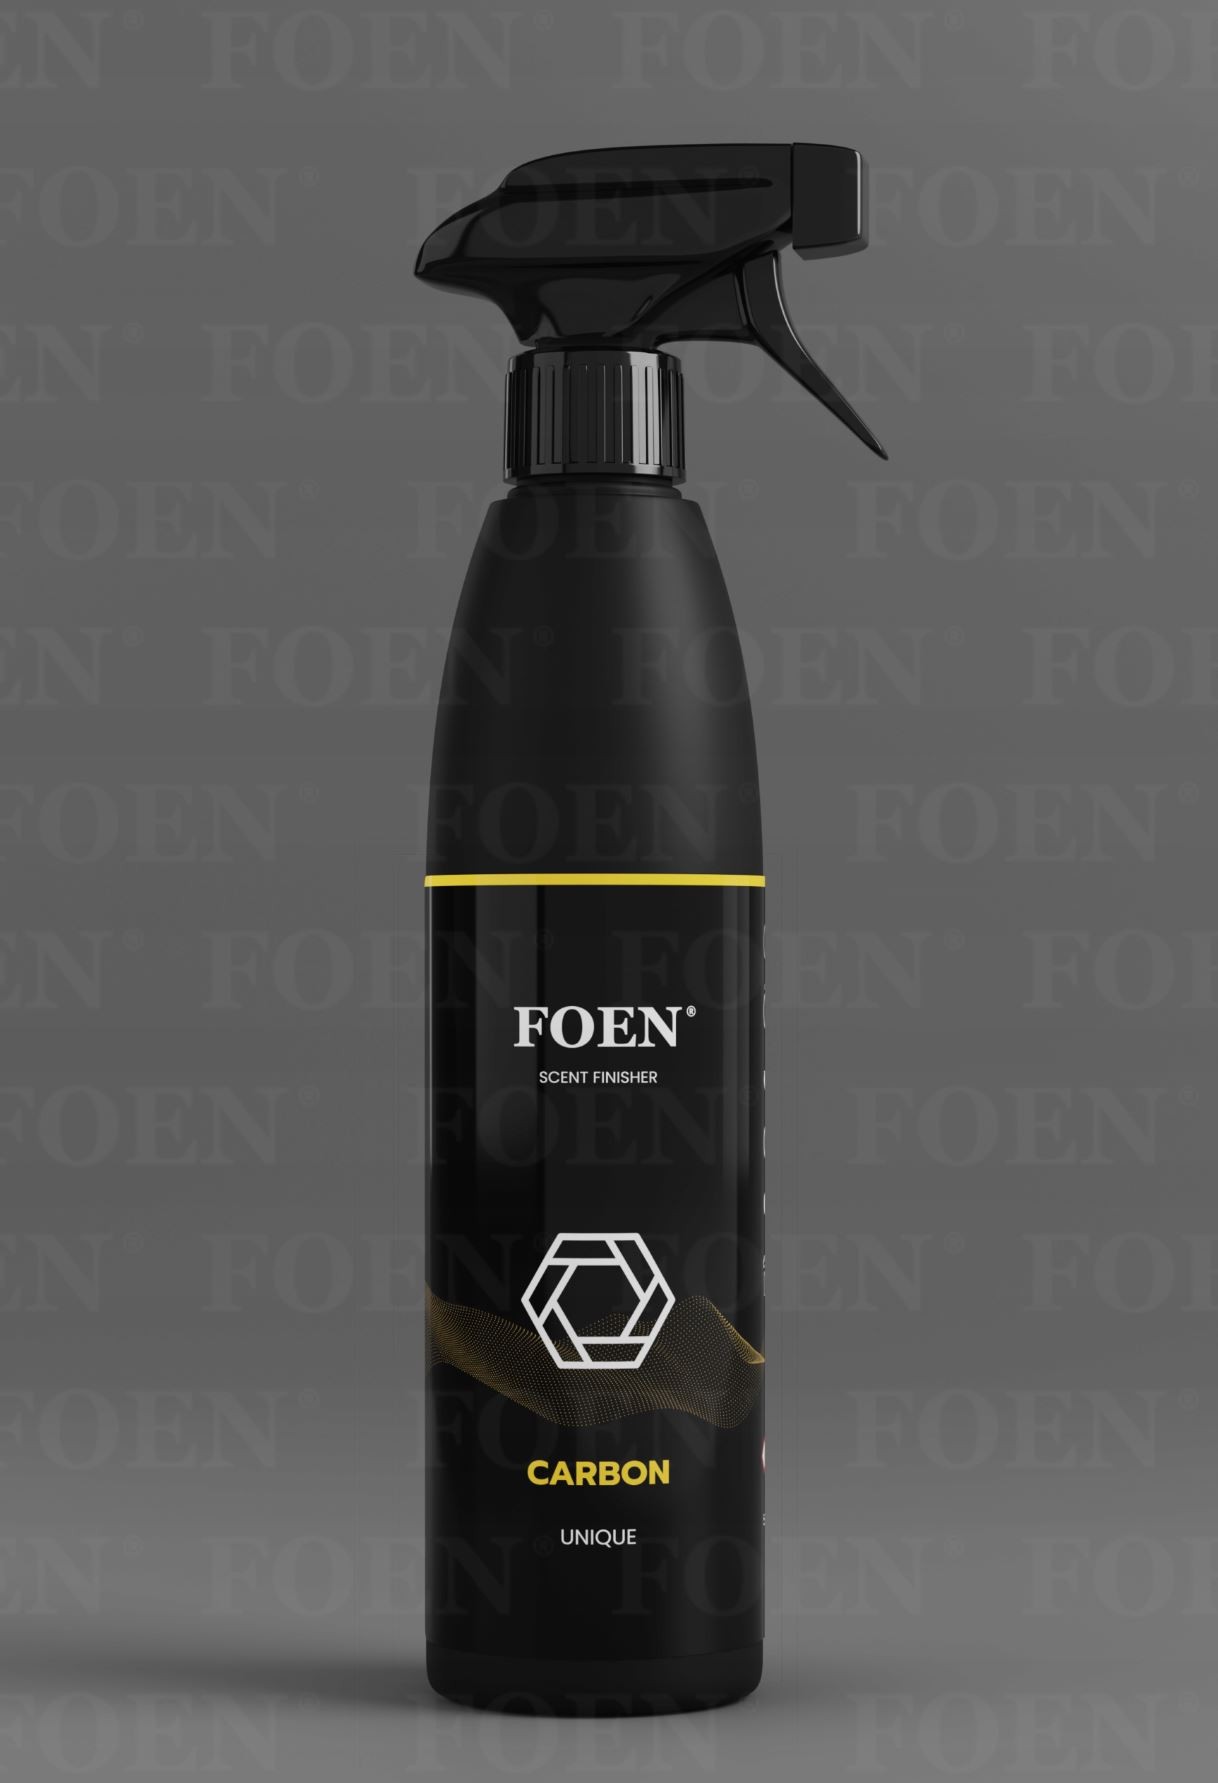 Interiérová vůně Foen Carbon (500 ml)